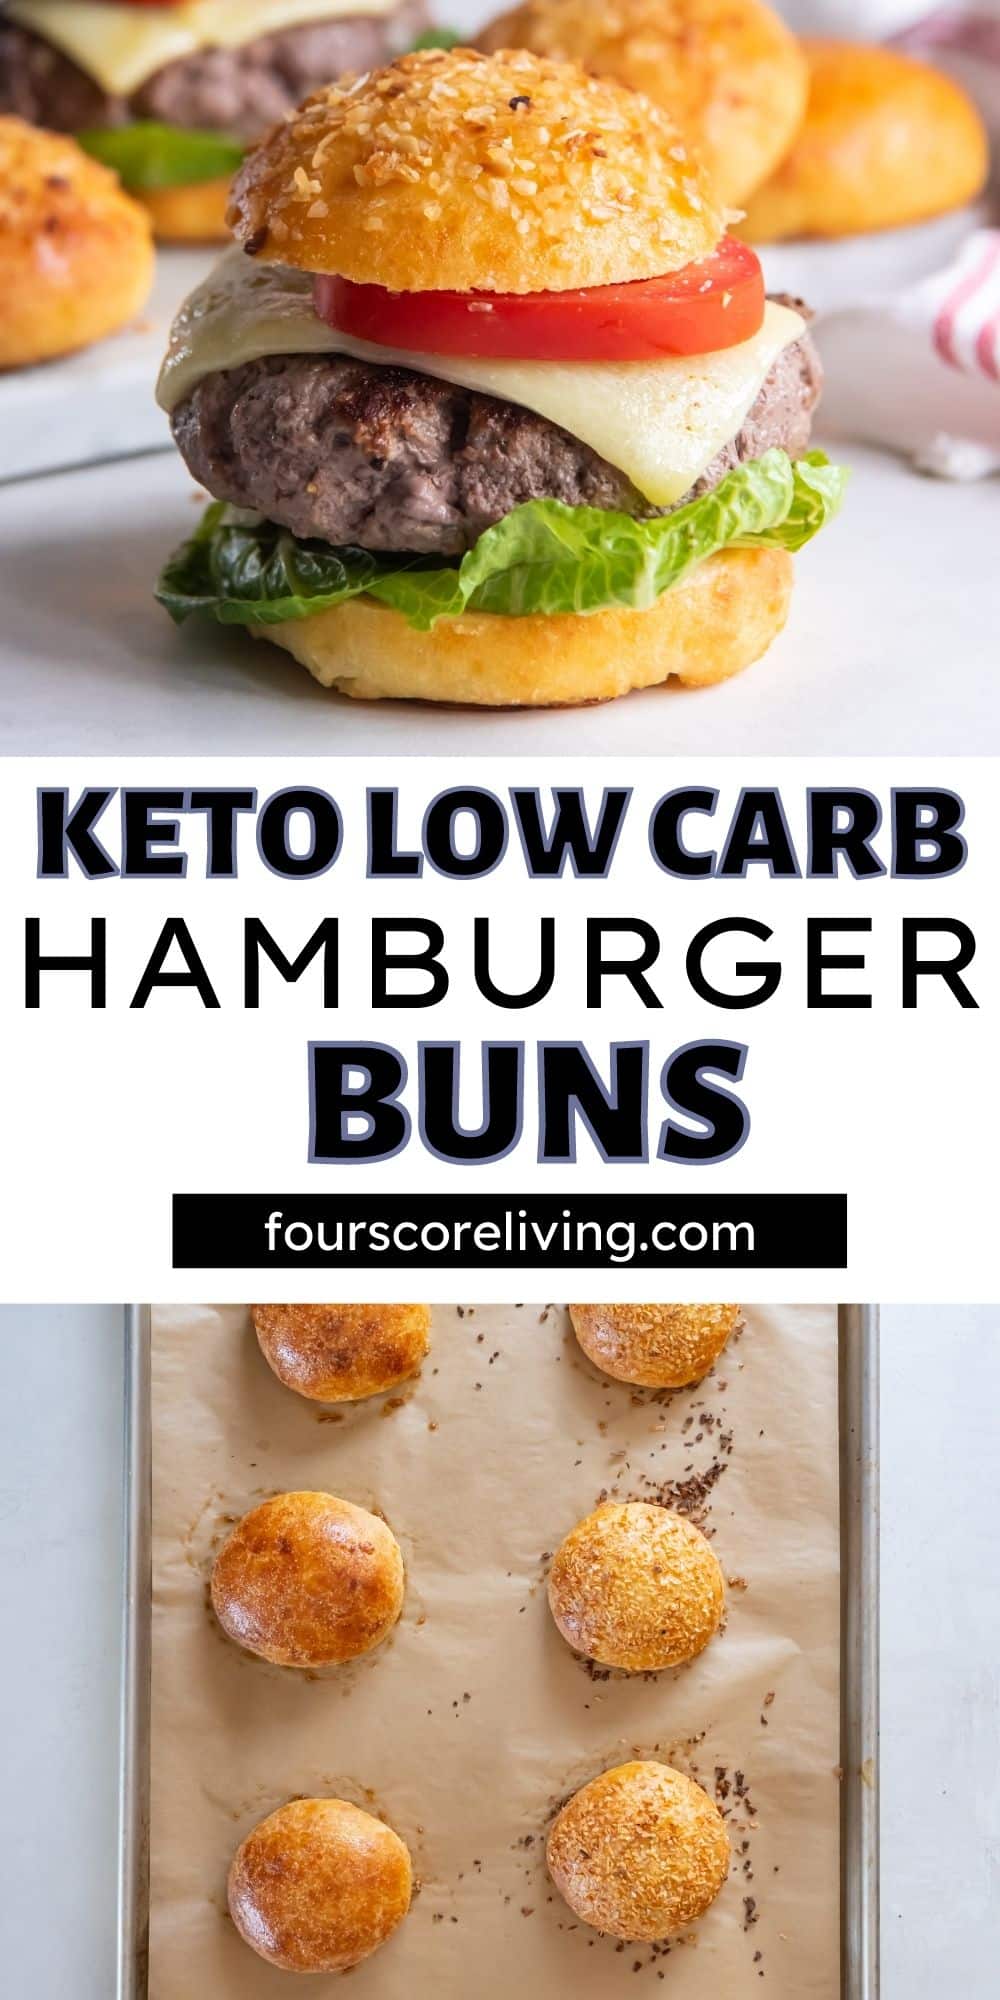 Two photos: A large burger on a keto bun and a tray of baked keto hamburger buns